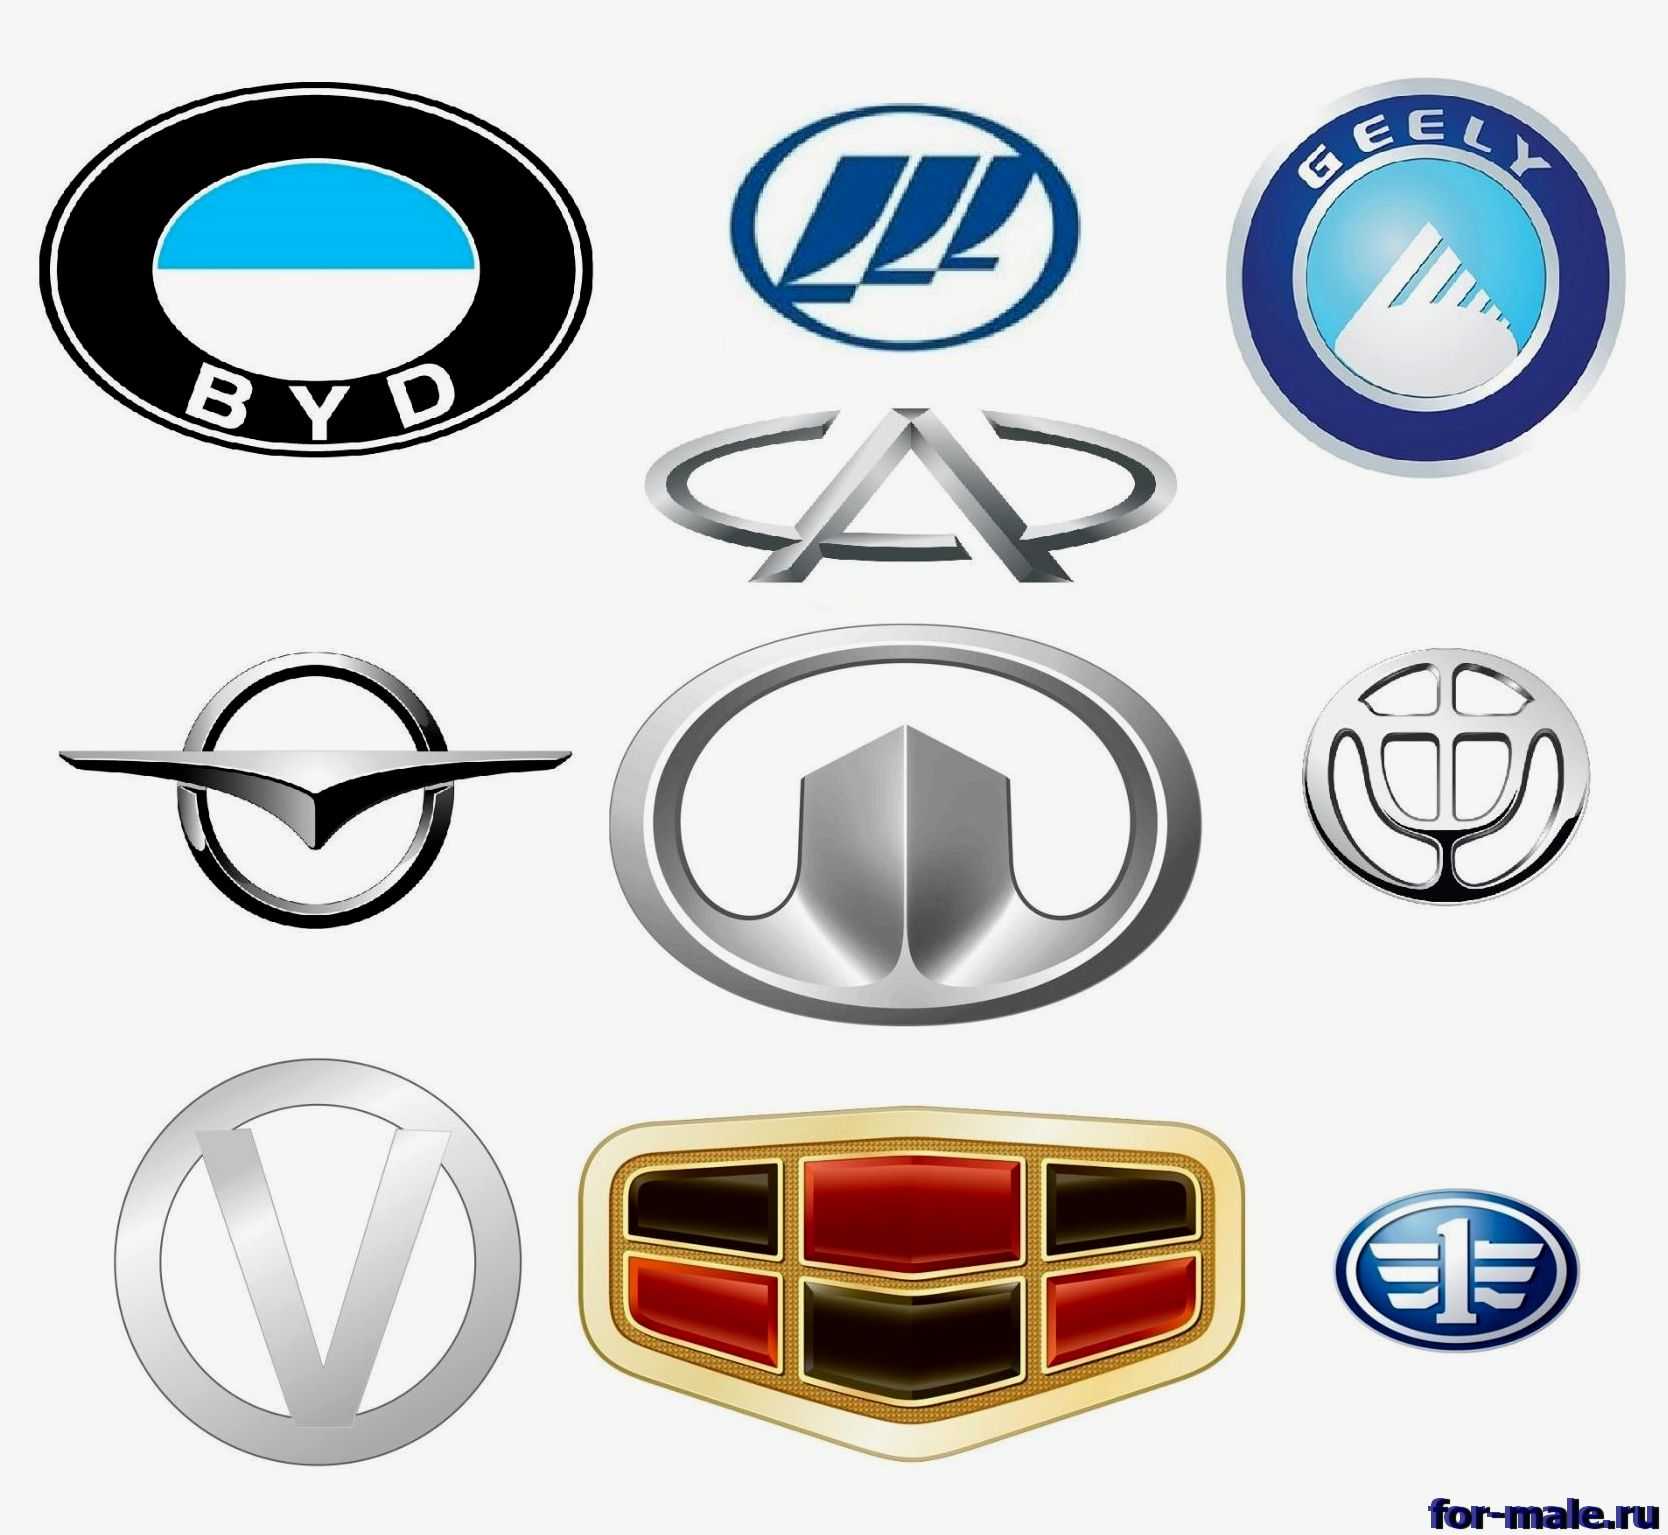 Марки китайских автомобилей продаваемых в россии со значками фото с названиями